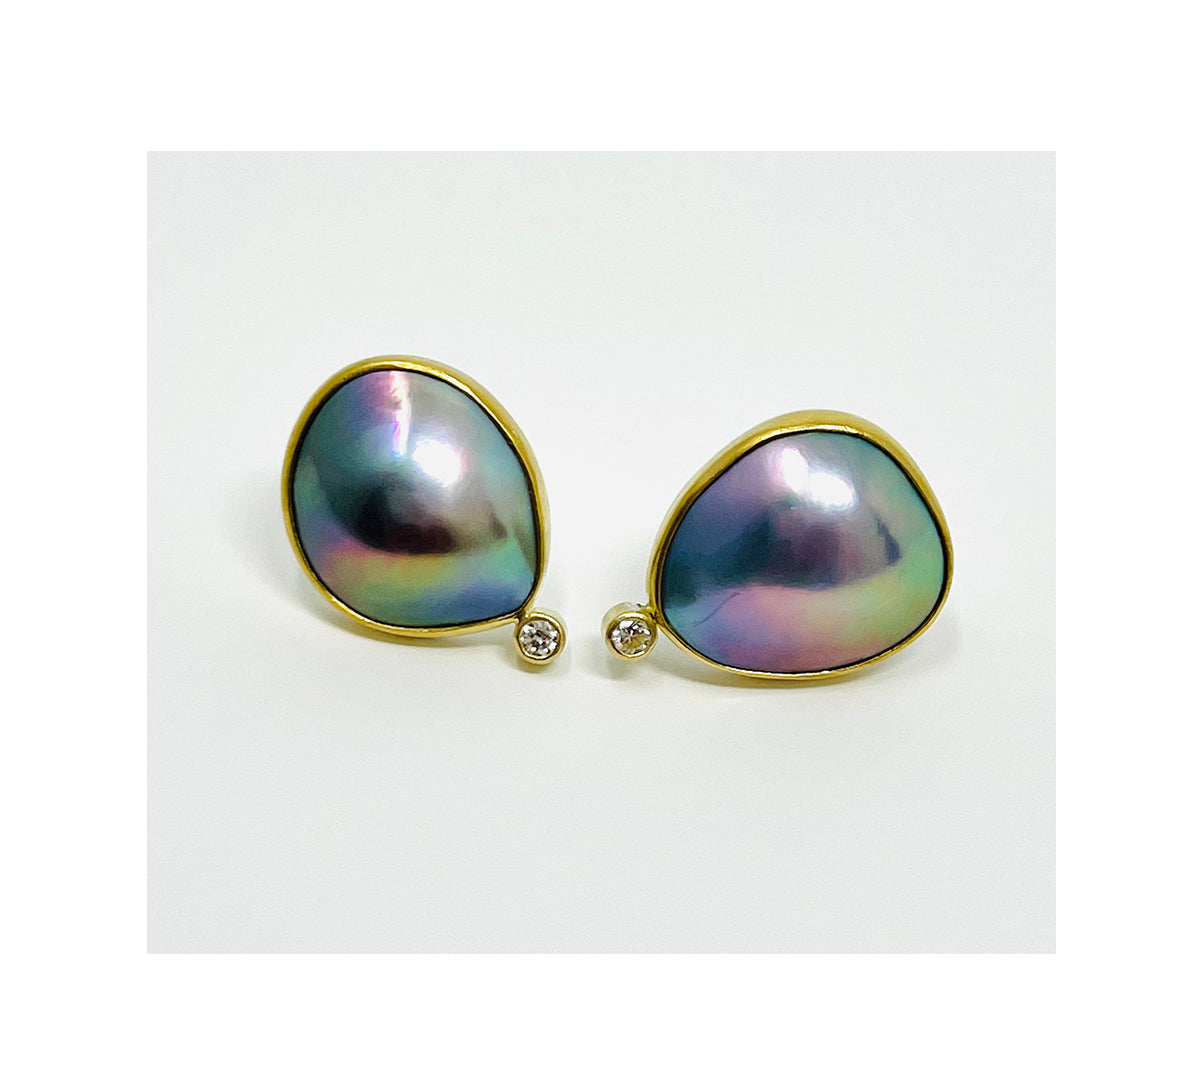 Mabe pearls, 22k bezel, 18k bezel, sterling silver, 2.5mm diamonds earrings